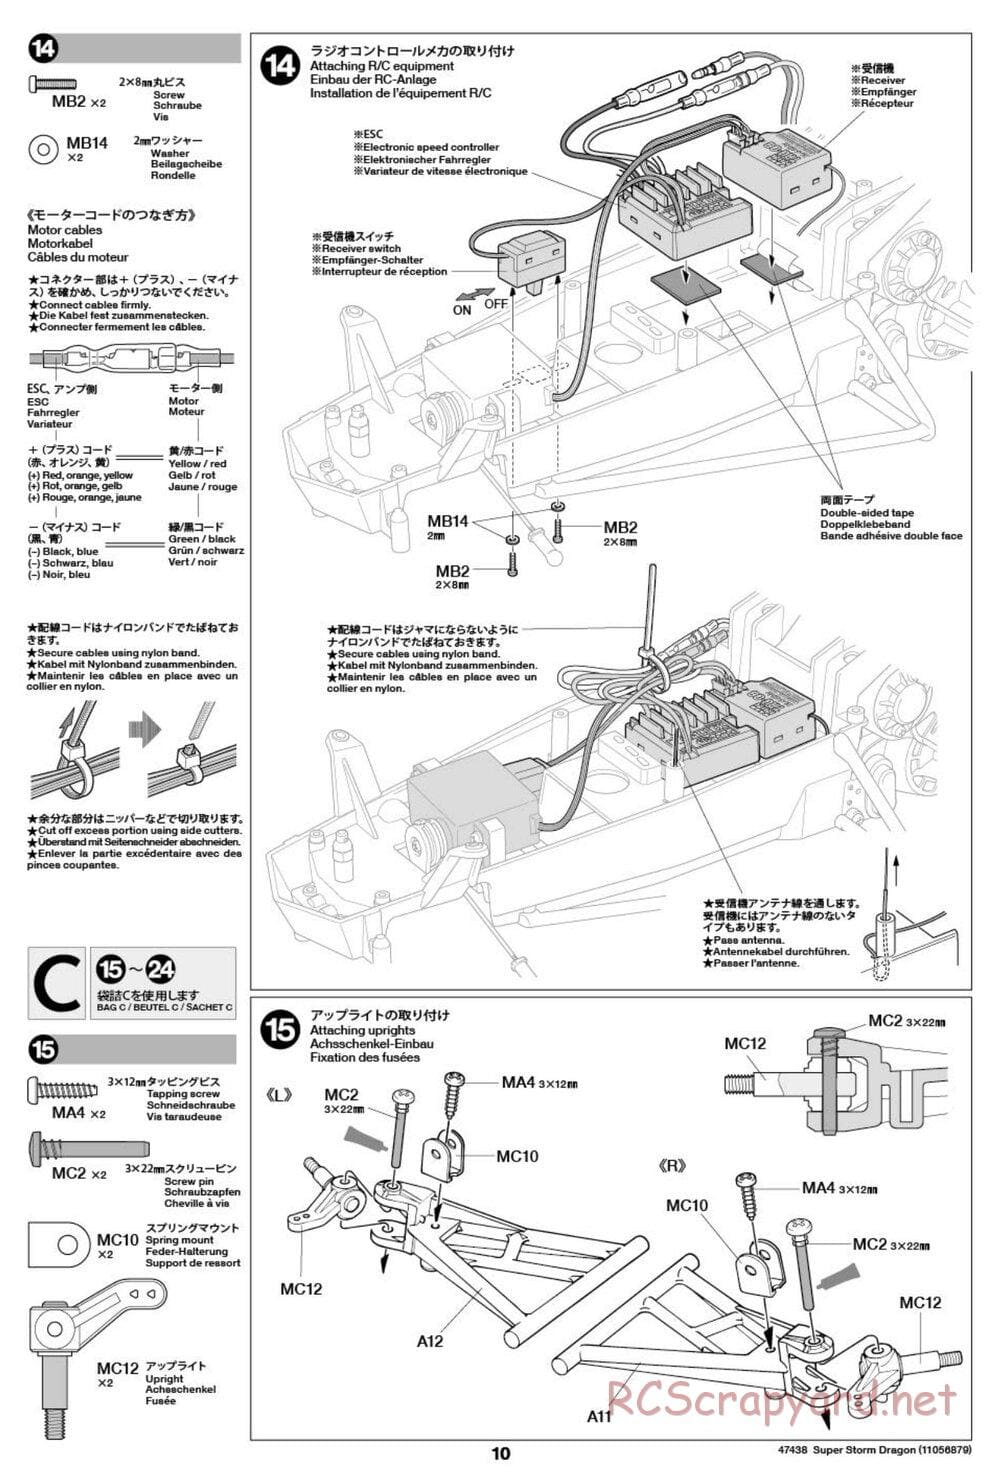 Tamiya - Super Storm Dragon Chassis - Manual - Page 10